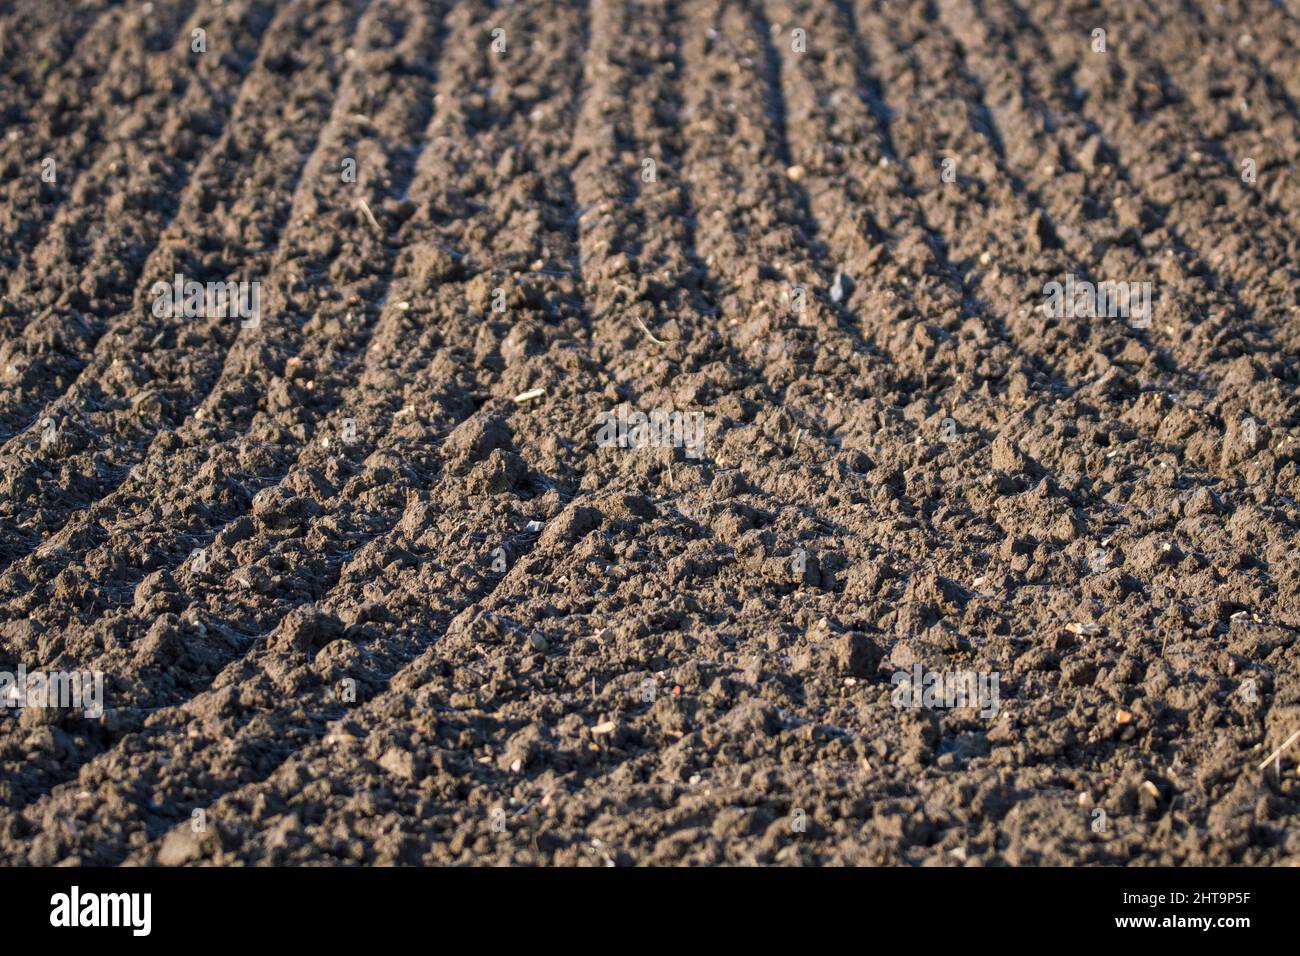 Harrow tracks in arable field Stock Photo